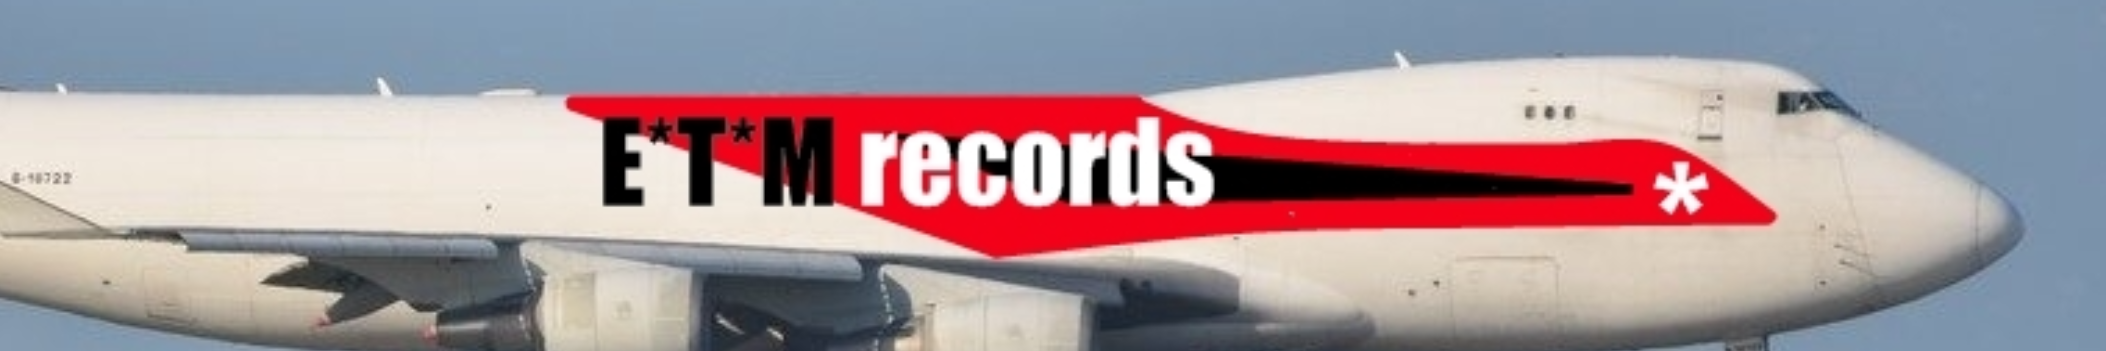 E*T*M records